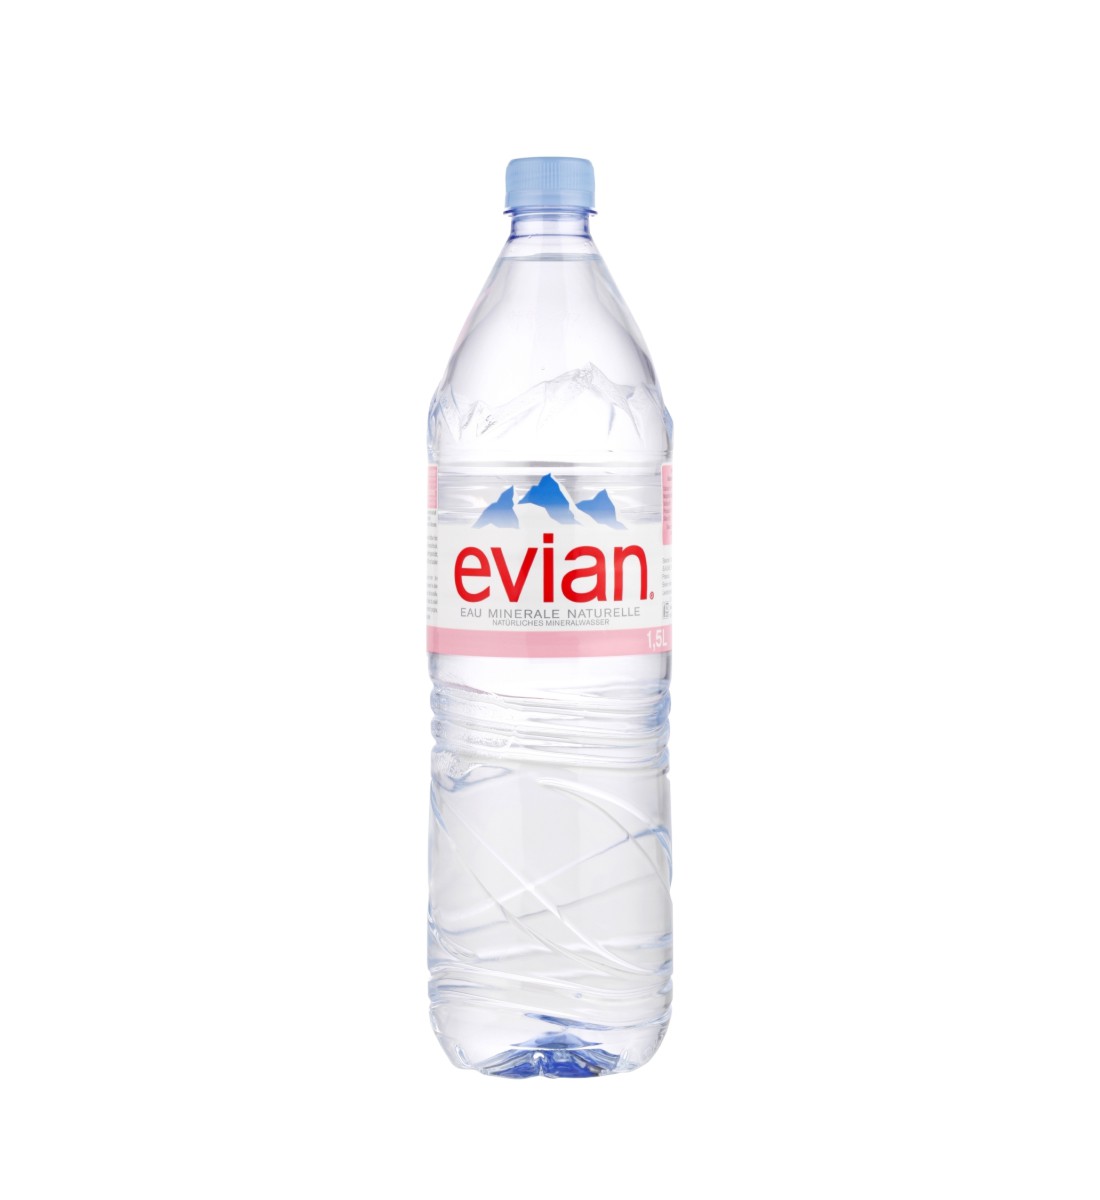 Evian apa minerala naturala plata 1.5L 1.5L